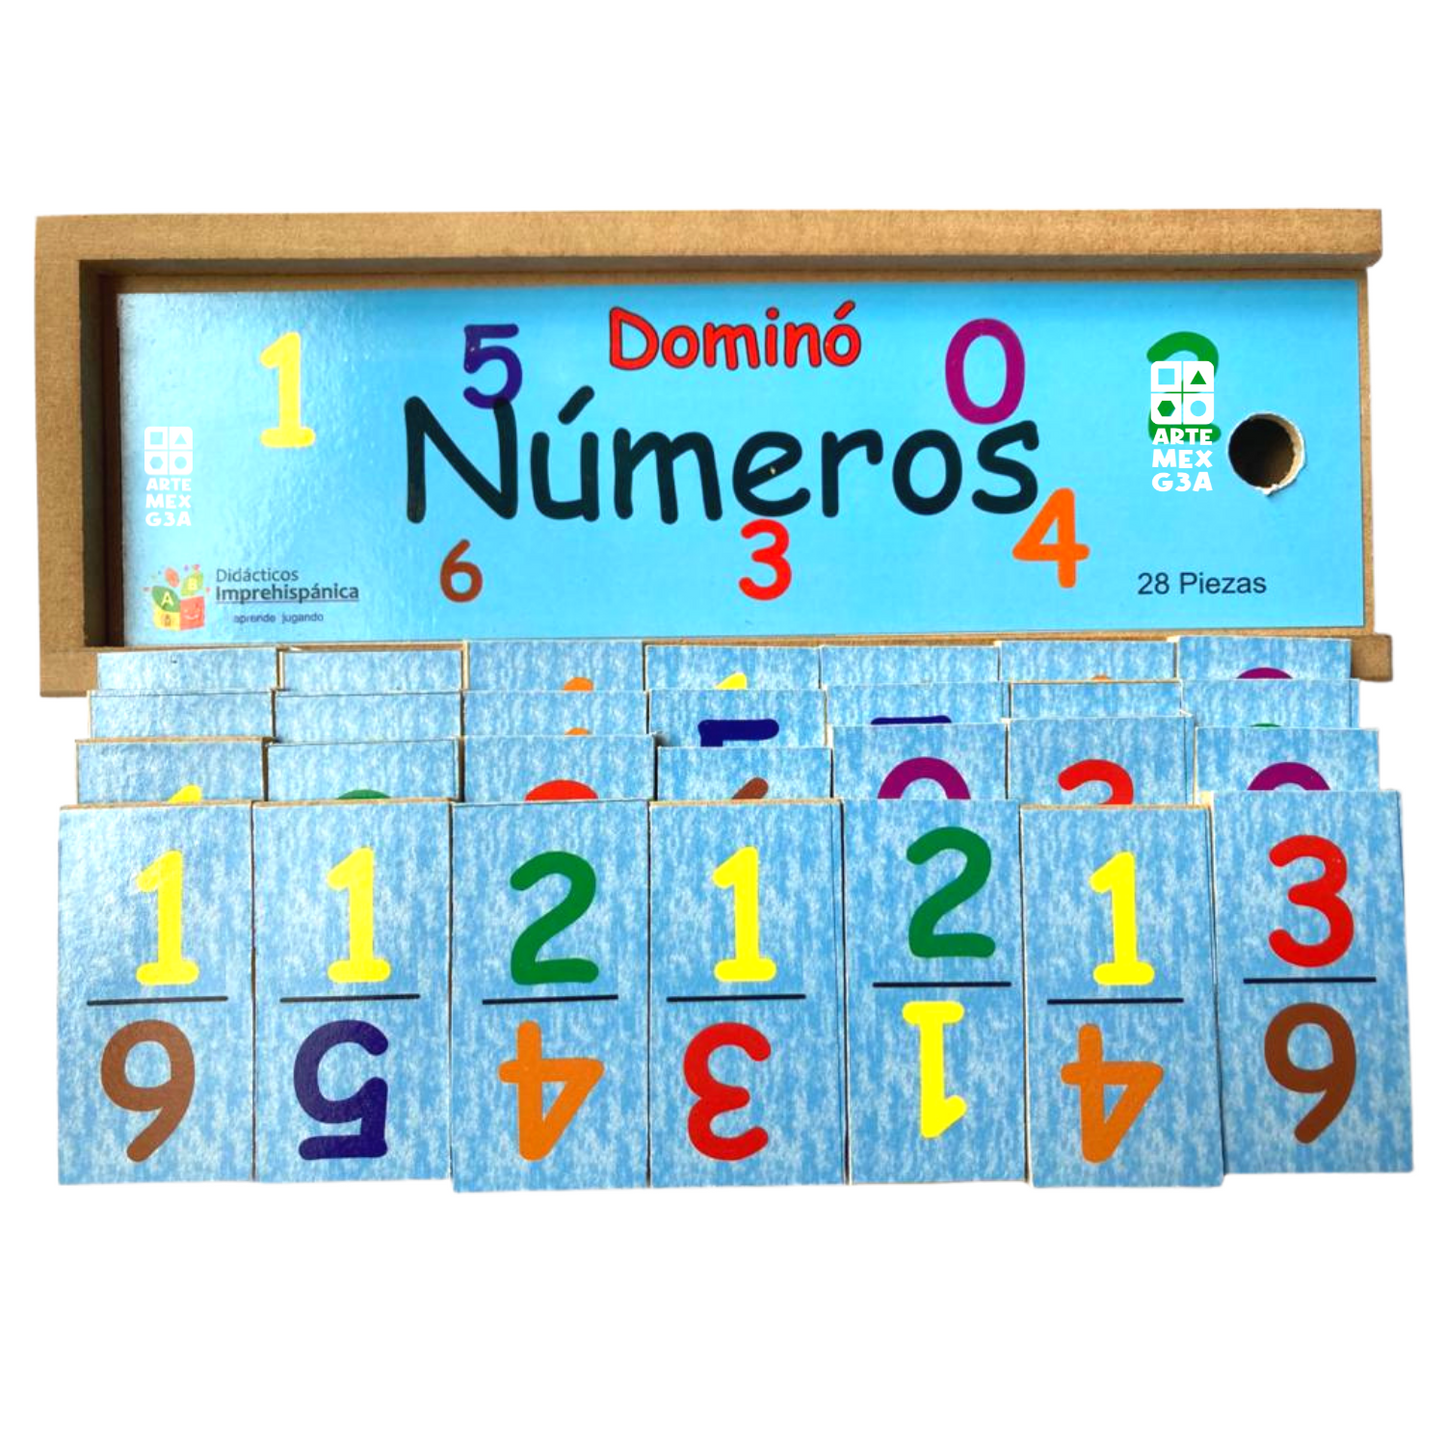 Kit de Cocodrilo, Gusano numérico con Domino de números y número x asoc